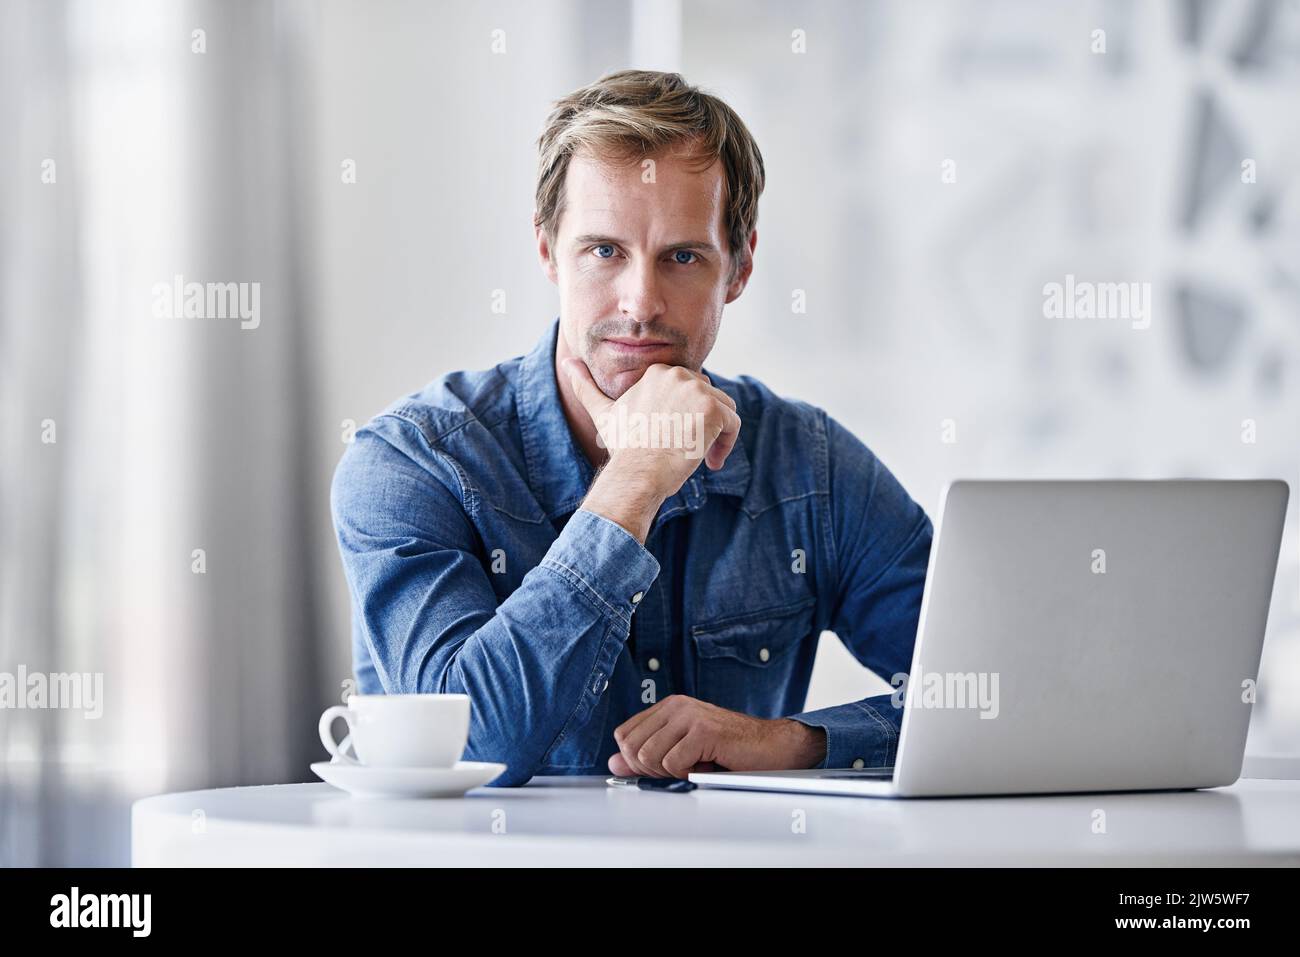 Son succès est basé sur ses actions. Portrait d'un homme d'affaires mature utilisant un ordinateur portable tout en étant assis à un bureau dans un bureau. Banque D'Images